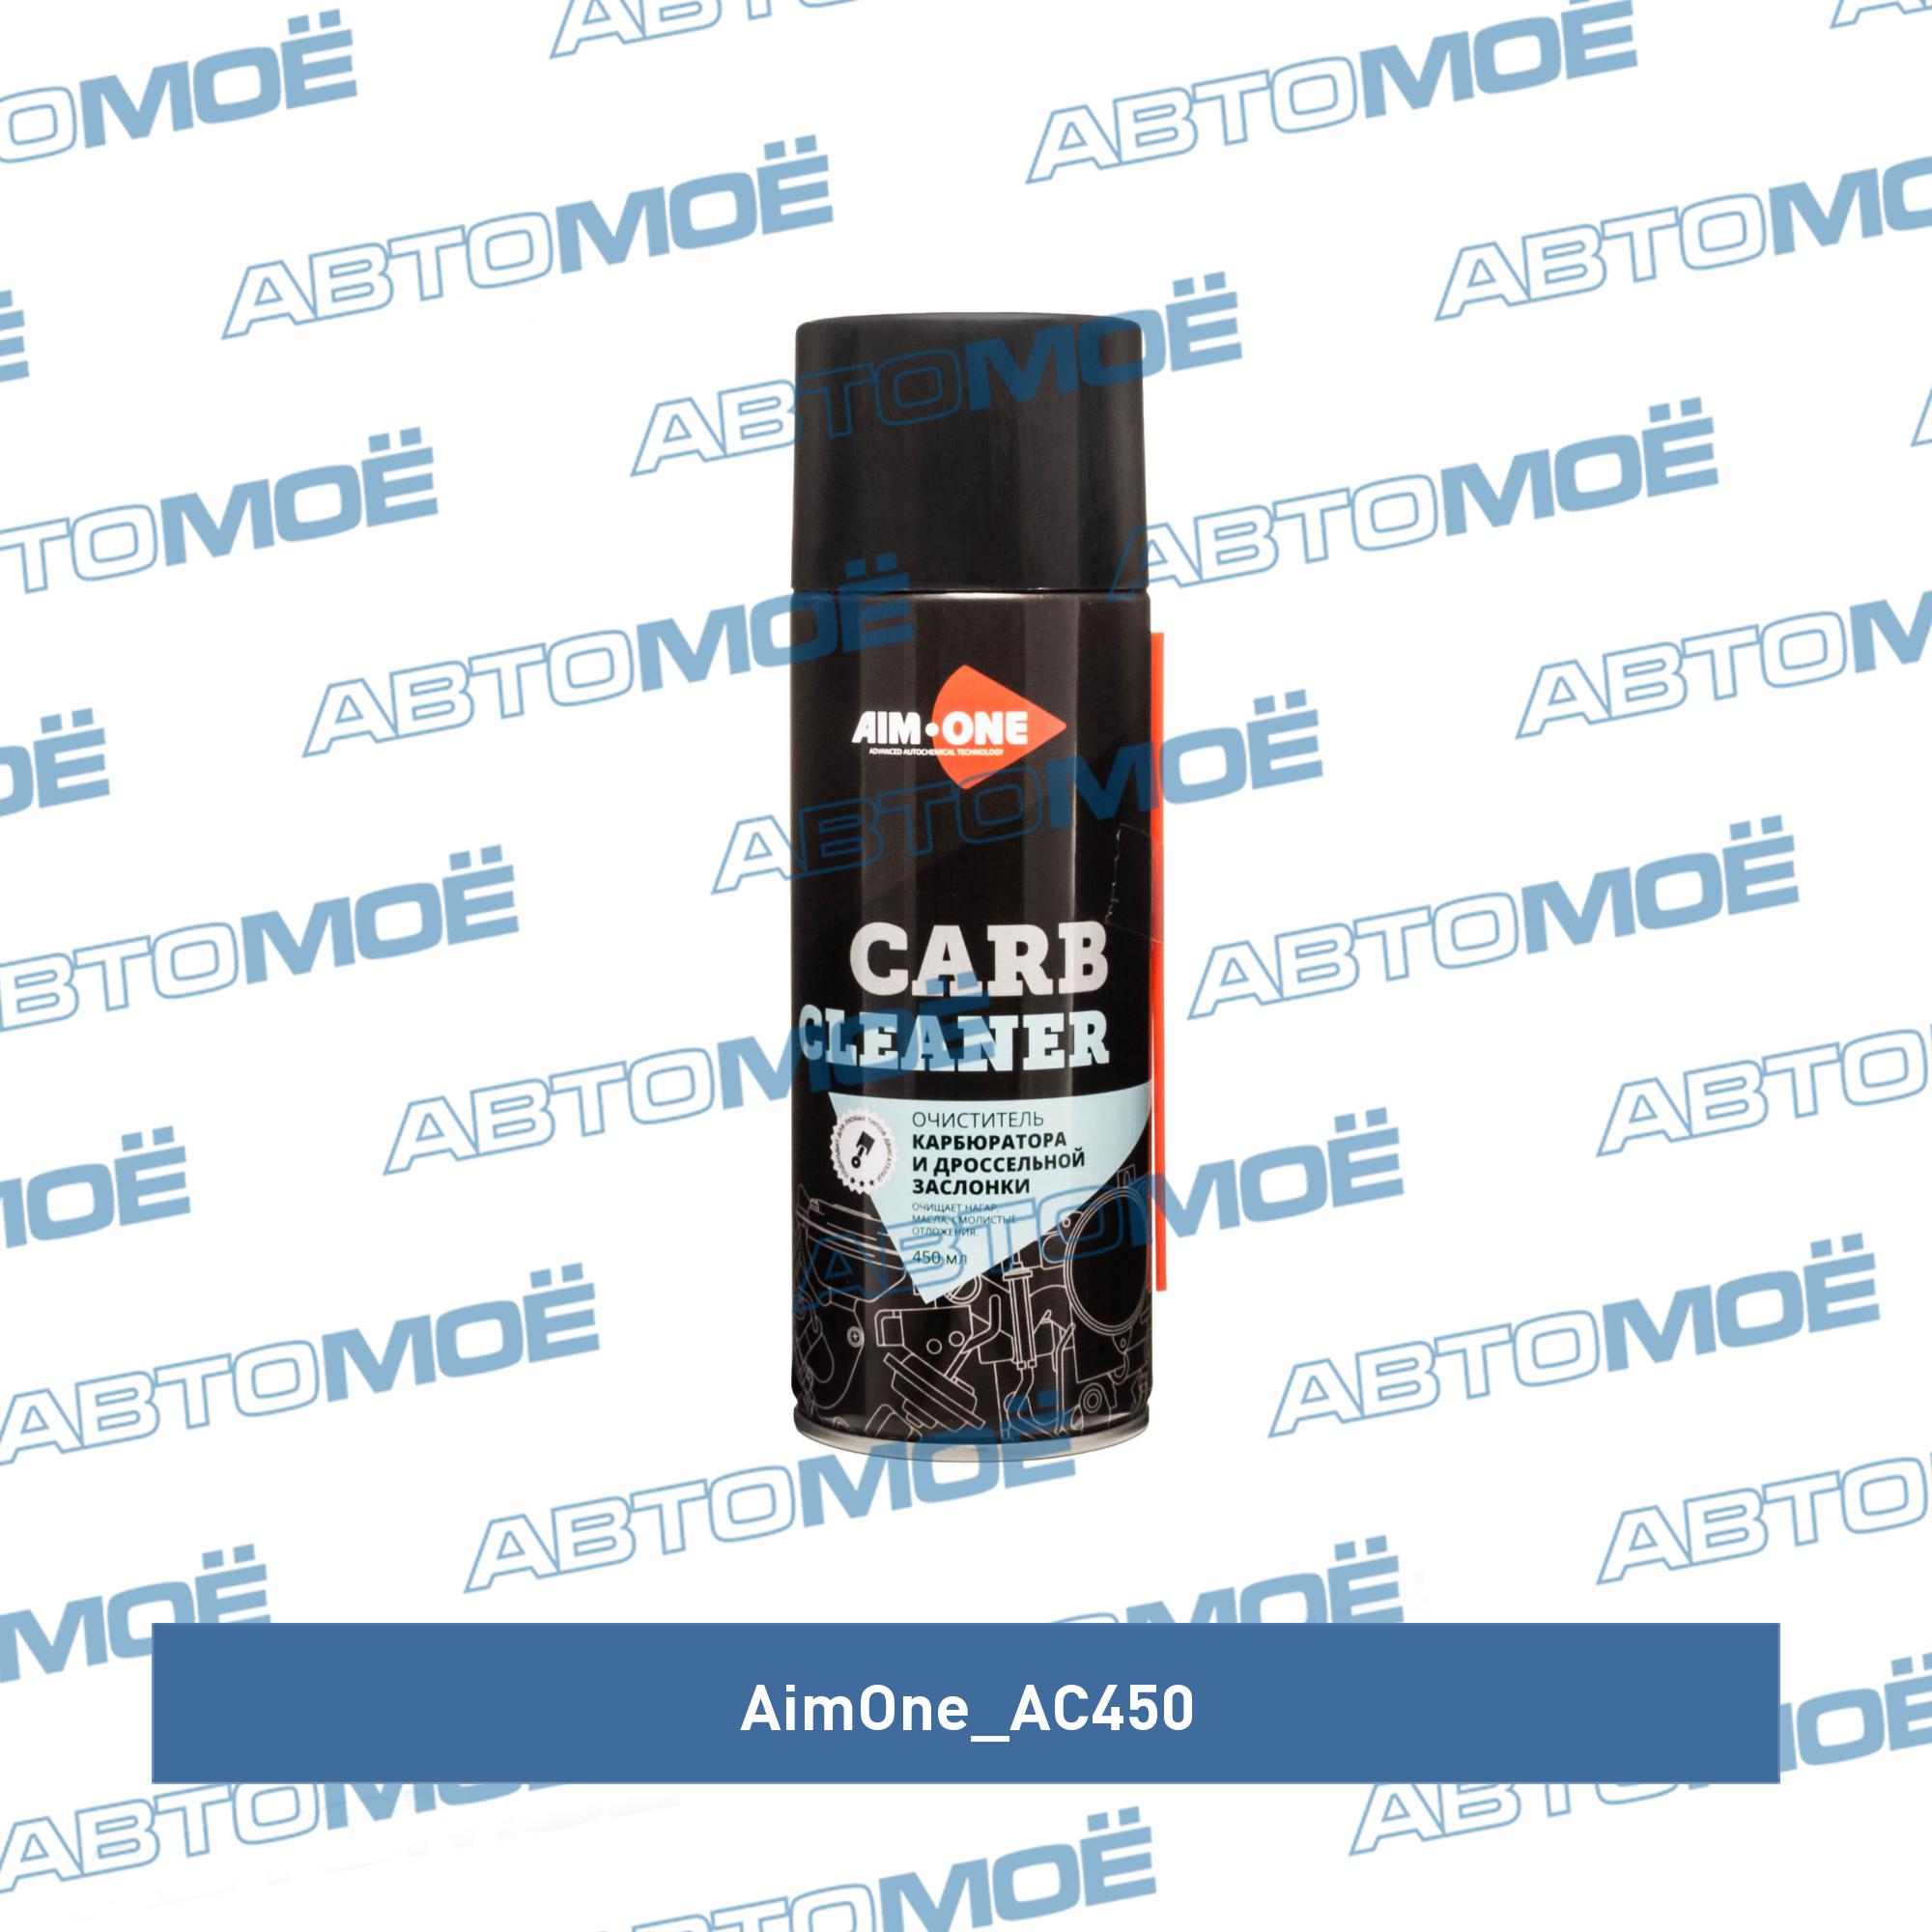  карбюратора и дроссельной заслонки 450мл AC450 AimOne  .